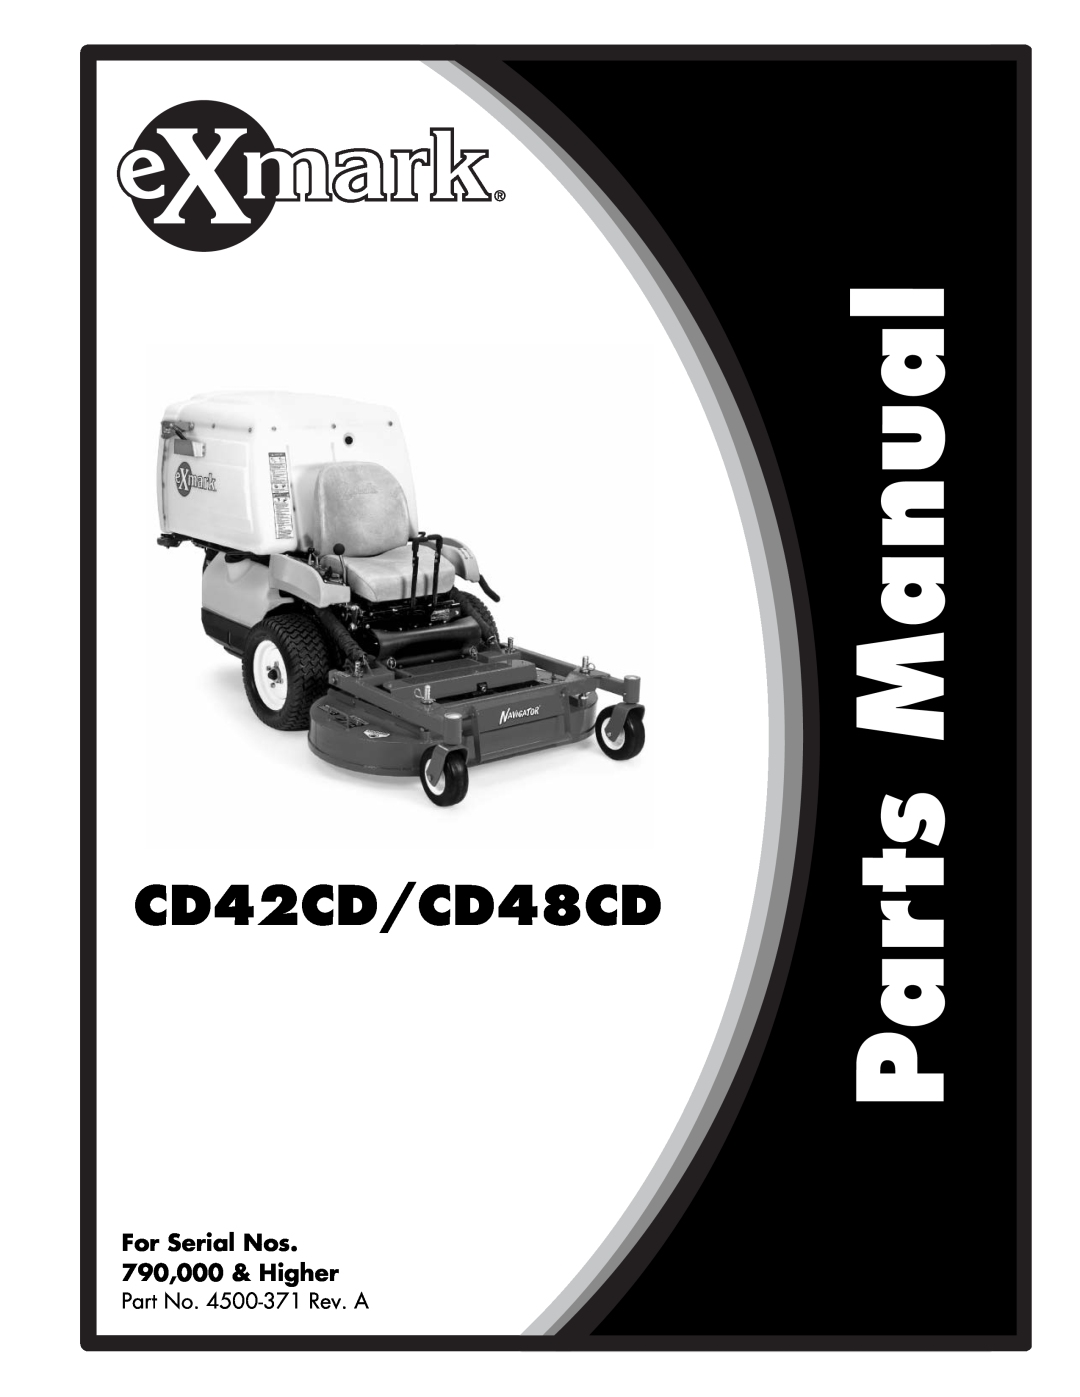 Exmark manual Part No. 4500-371Rev. A, CD42CD/CD48CD, For Serial Nos 790,000 & Higher 